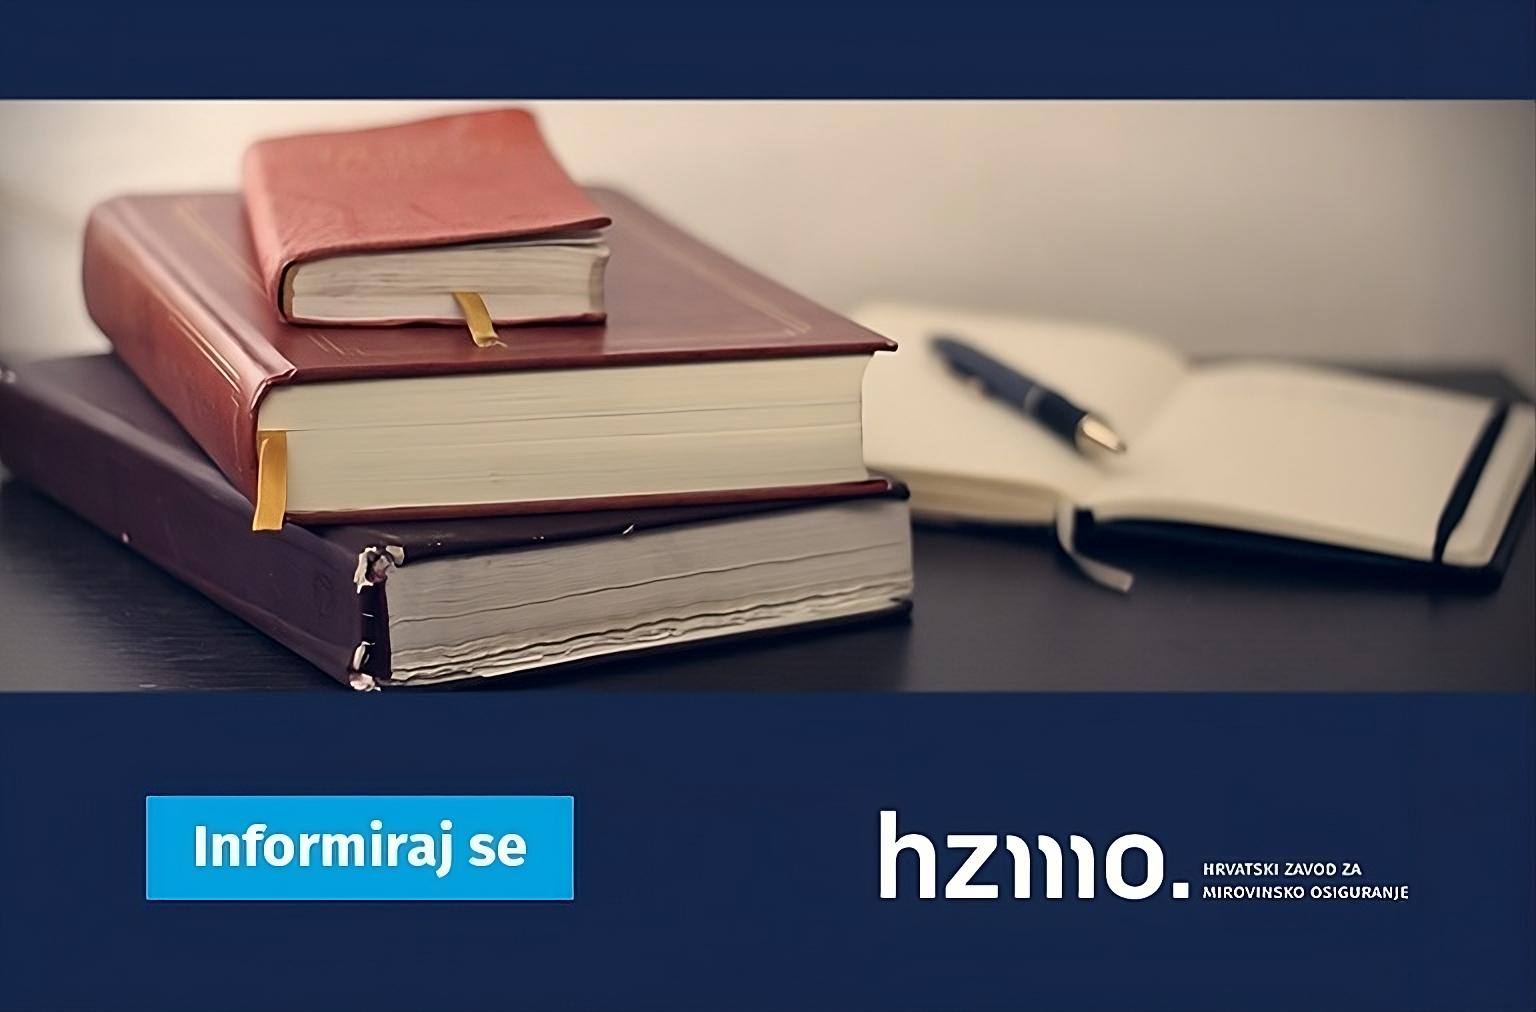 Ova slika prikazuje dvije zatvorene knjige, otvorenu bilježnicu i kemijsku olovku na tamnoj površini. Na slici se također nalazi plavi pravokutnik s tekstom “Informiraj se” i logo “hzmo”.